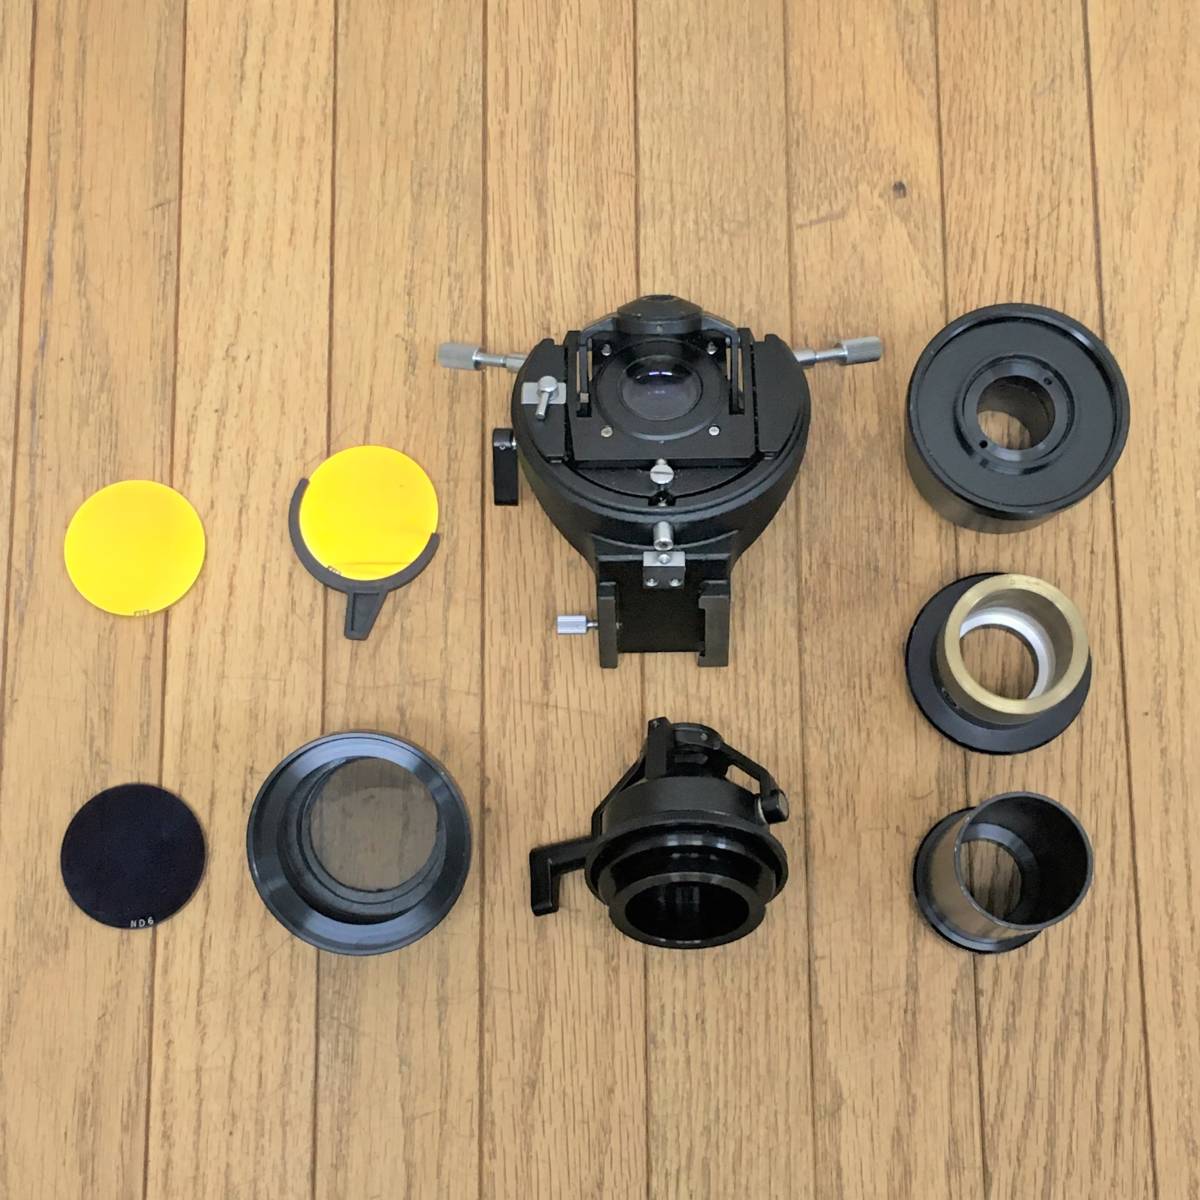 nikon/ connection eye lens / condenser / large amount set /pl4x/hk5x/pl2.5x/pl4x/achr0.90/ microscope accessory / exchange / parts / Nikon / experiment / research / Junk 